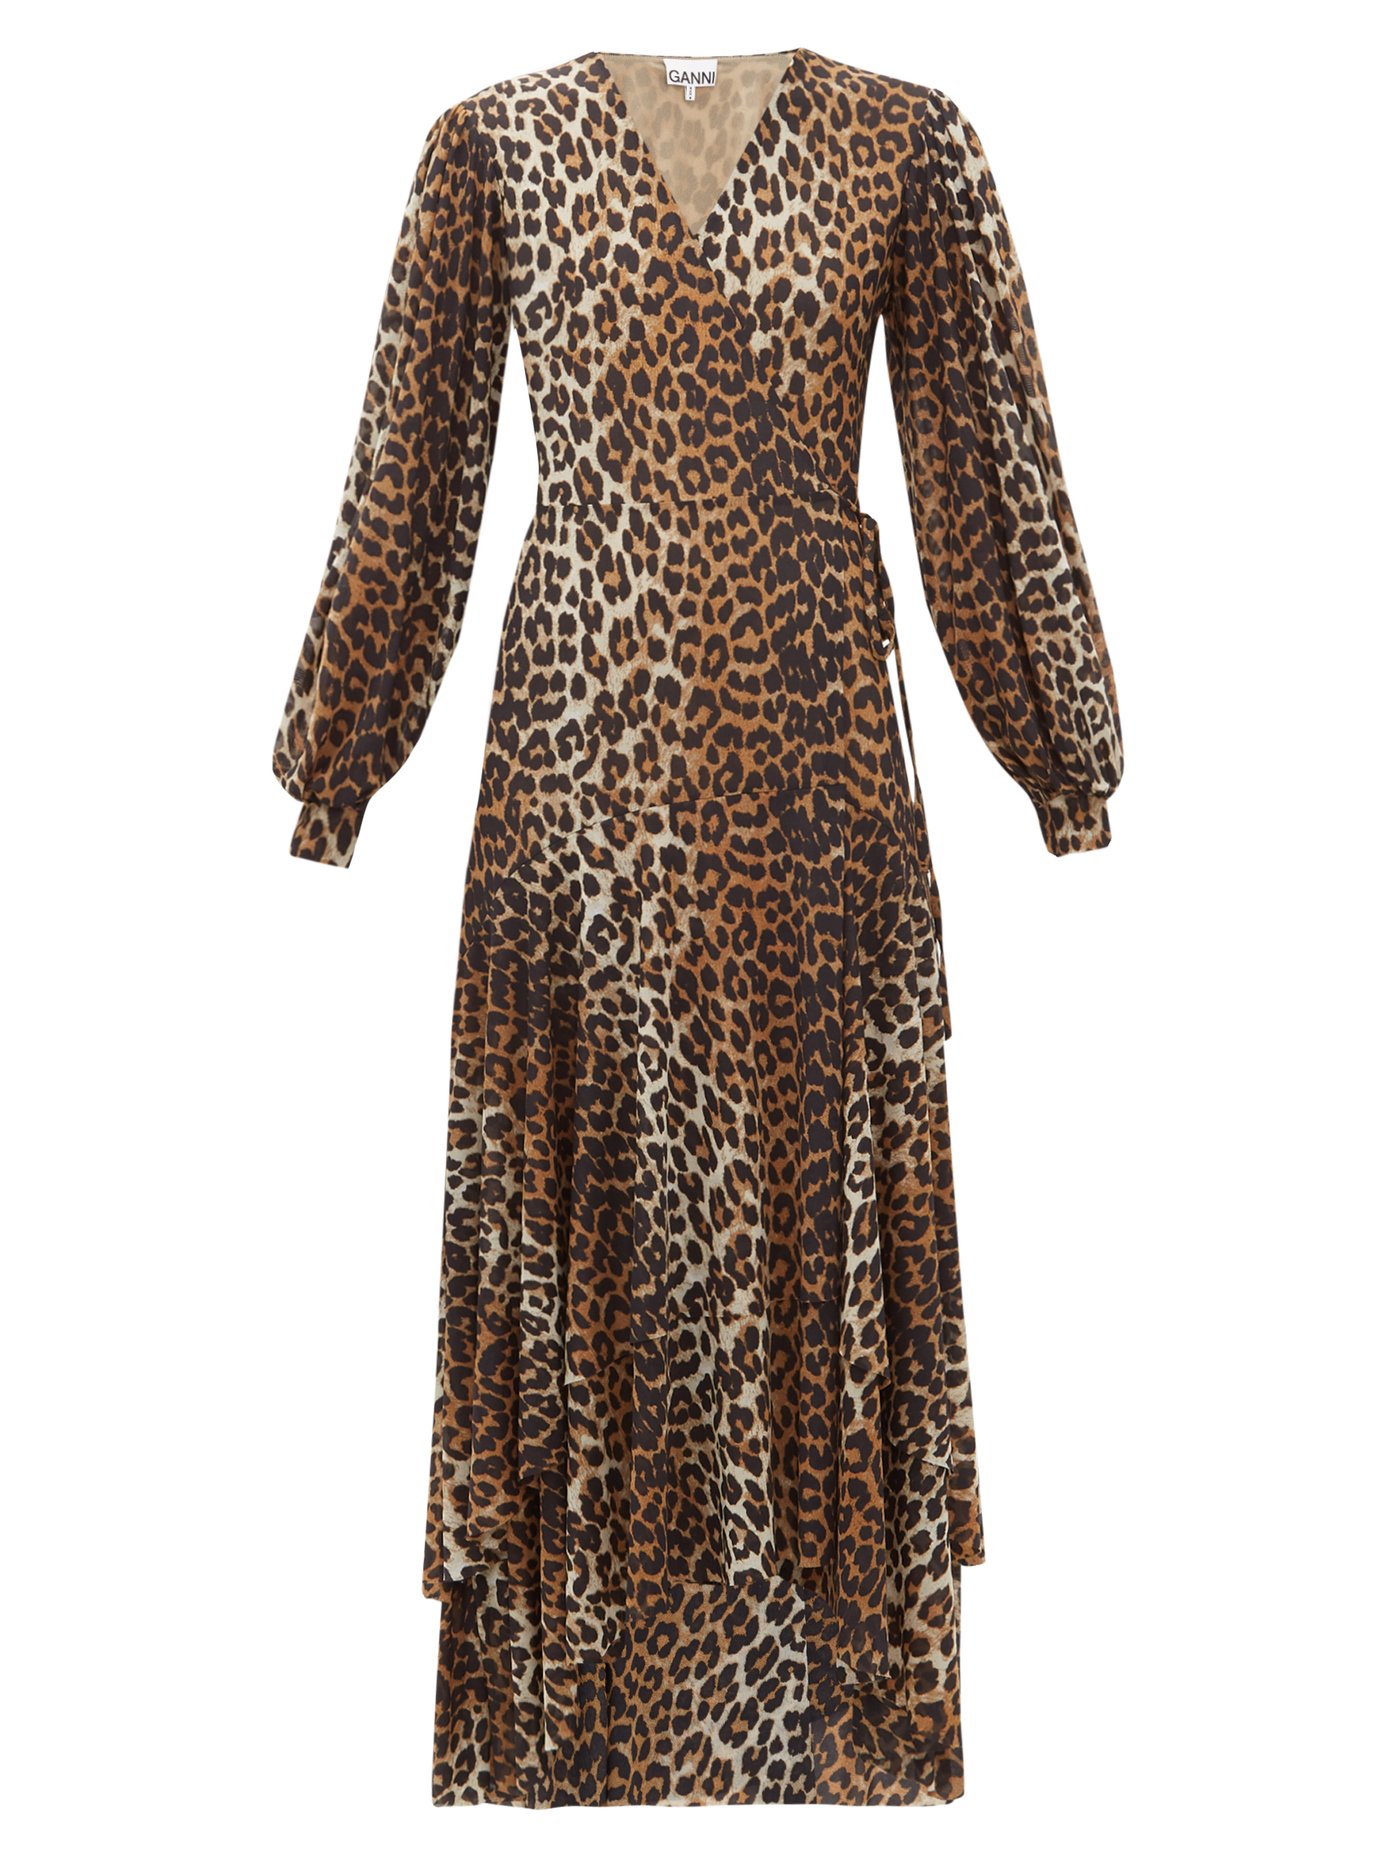 leopard dress next